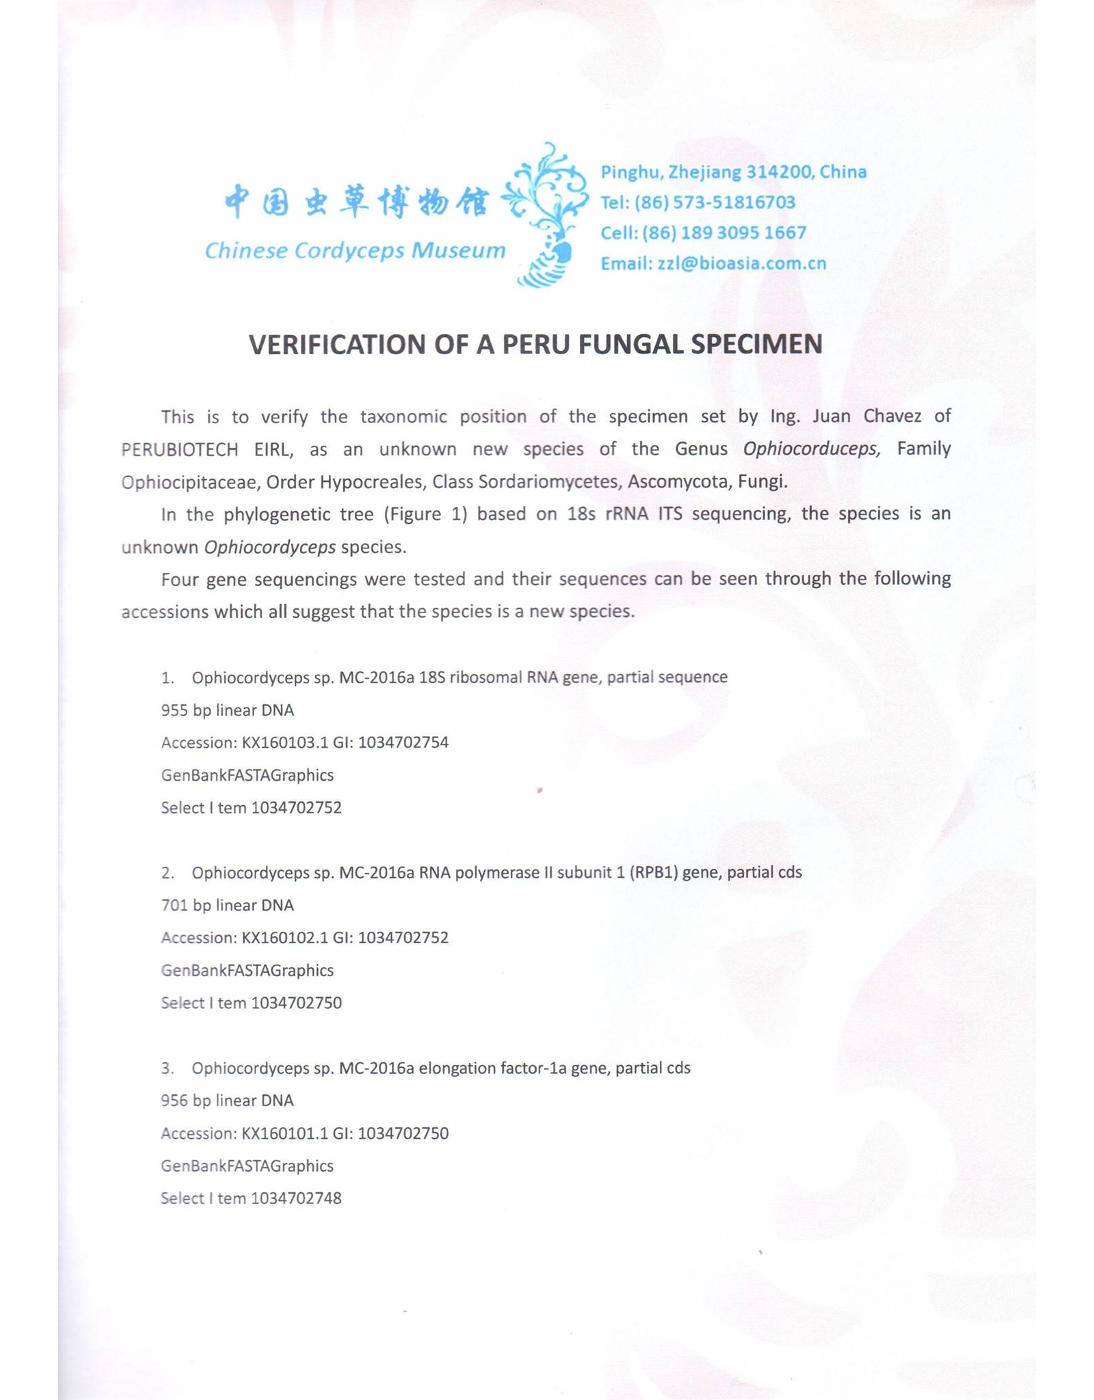 Verification of a Perú Fungal Specimen (page 1)